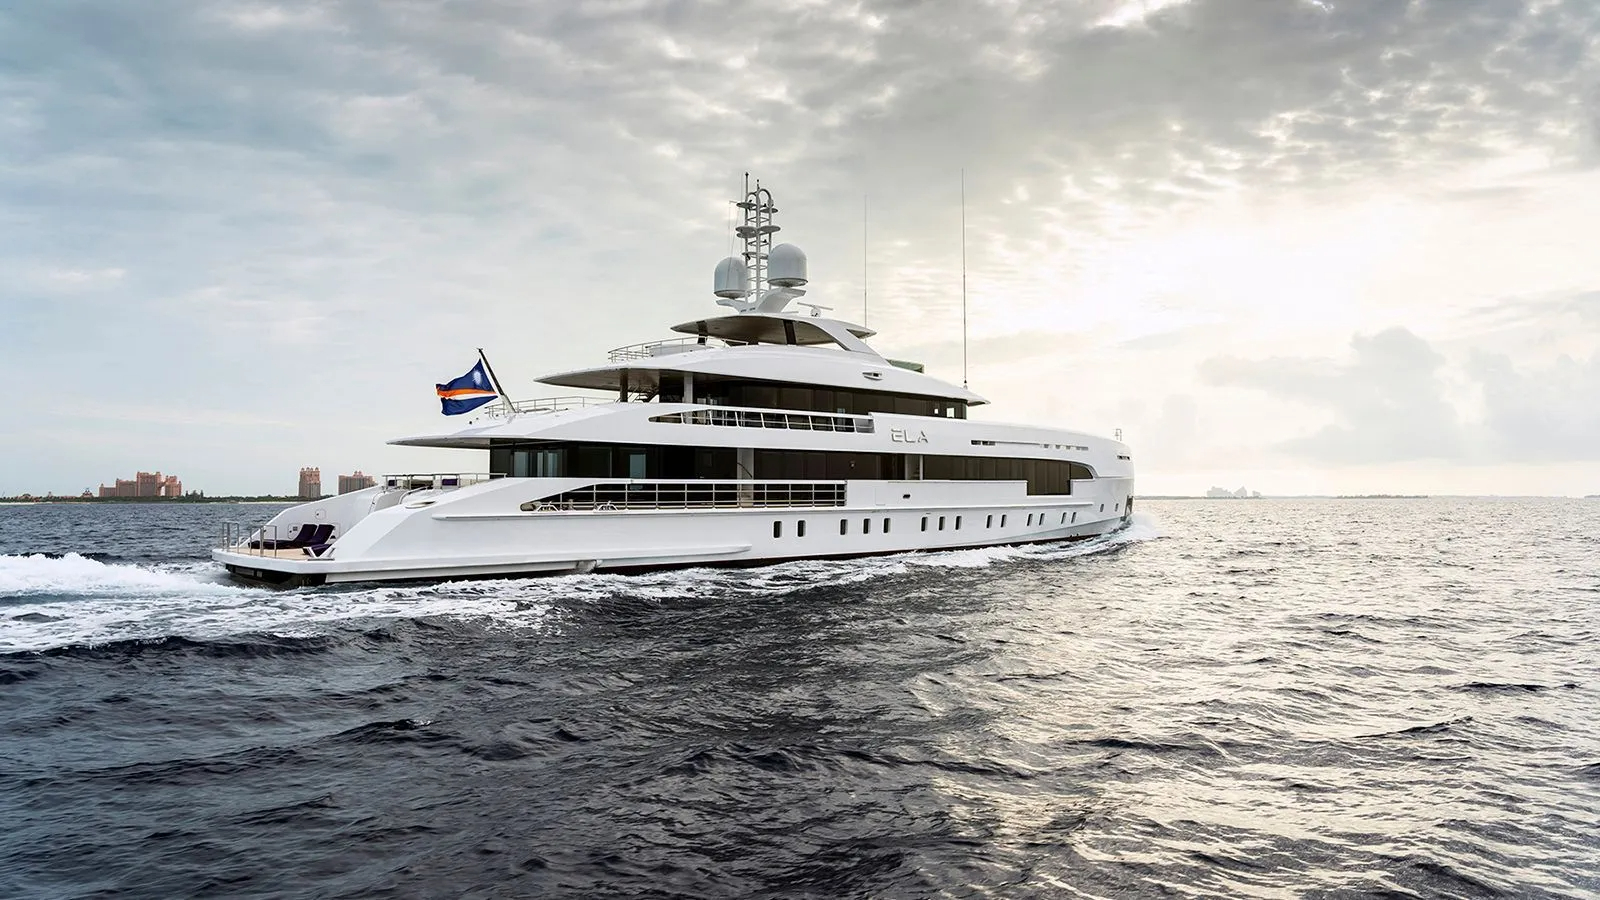 Luxury Yacht ELA